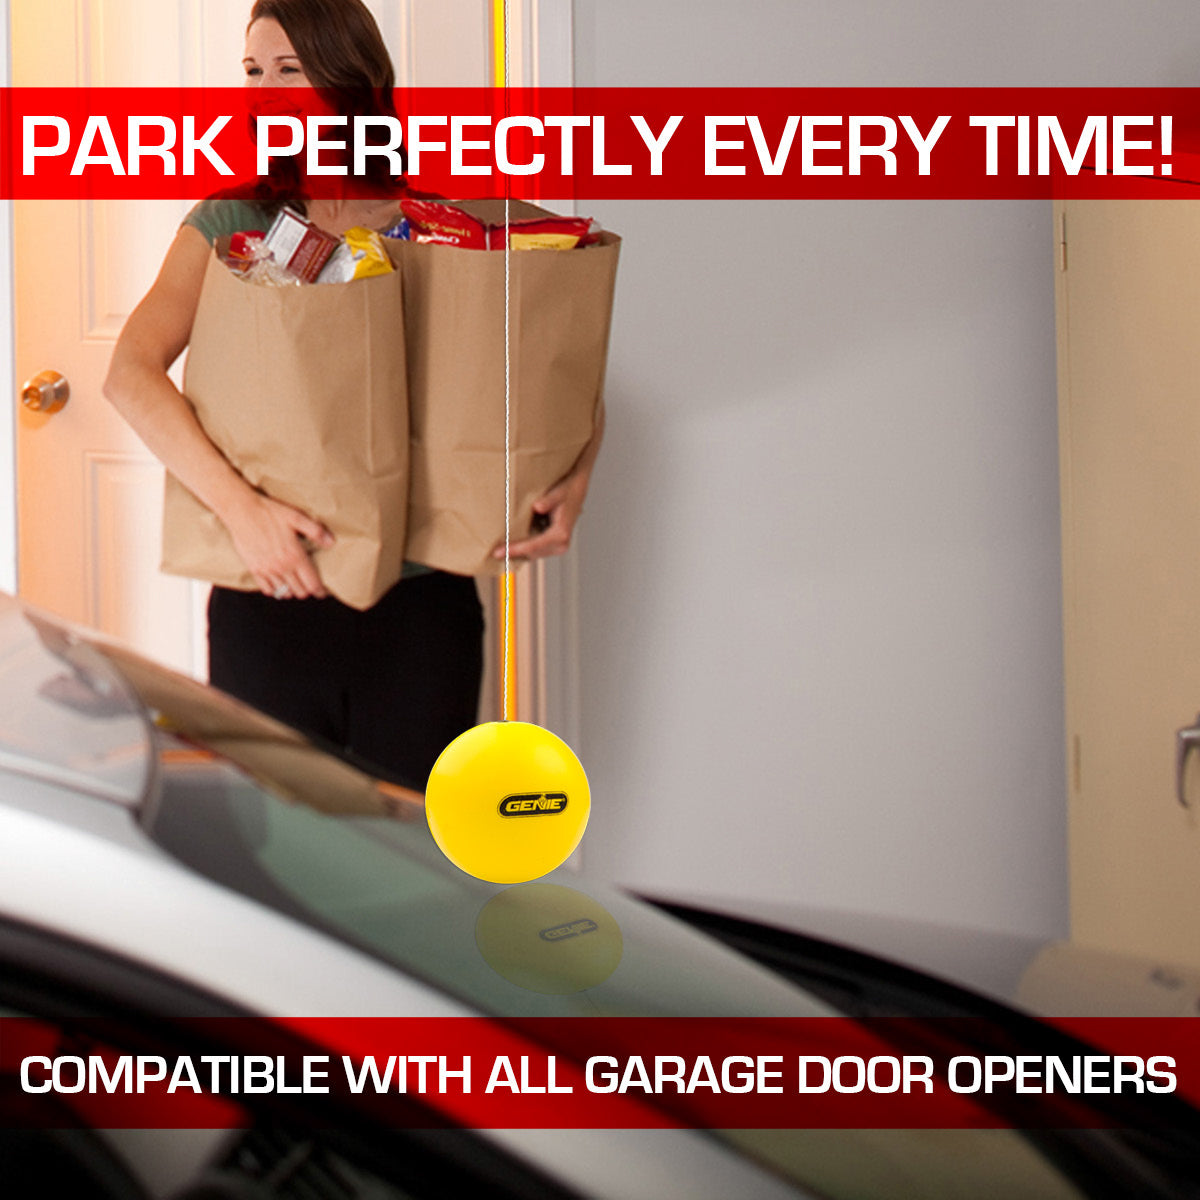 Genie Perfect Stop Garage Parking Aid – The Genie Company